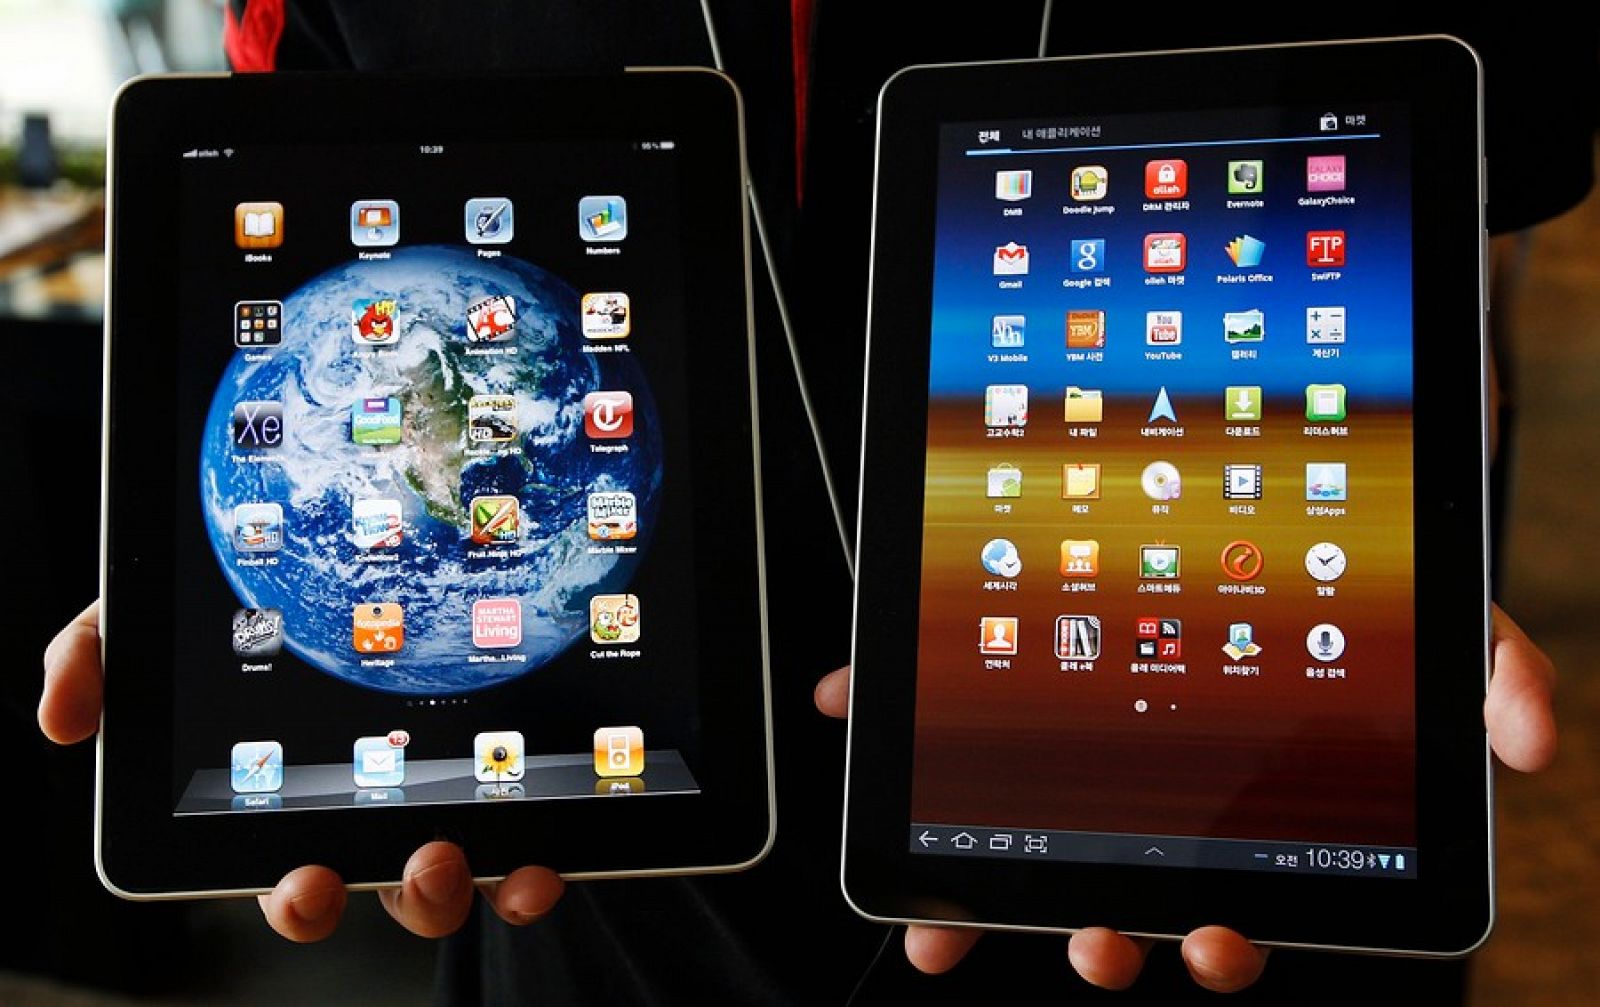 Comparación entre el Galaxy Tab 10.1 de Samsung (D) y el iPad de Apple (I)